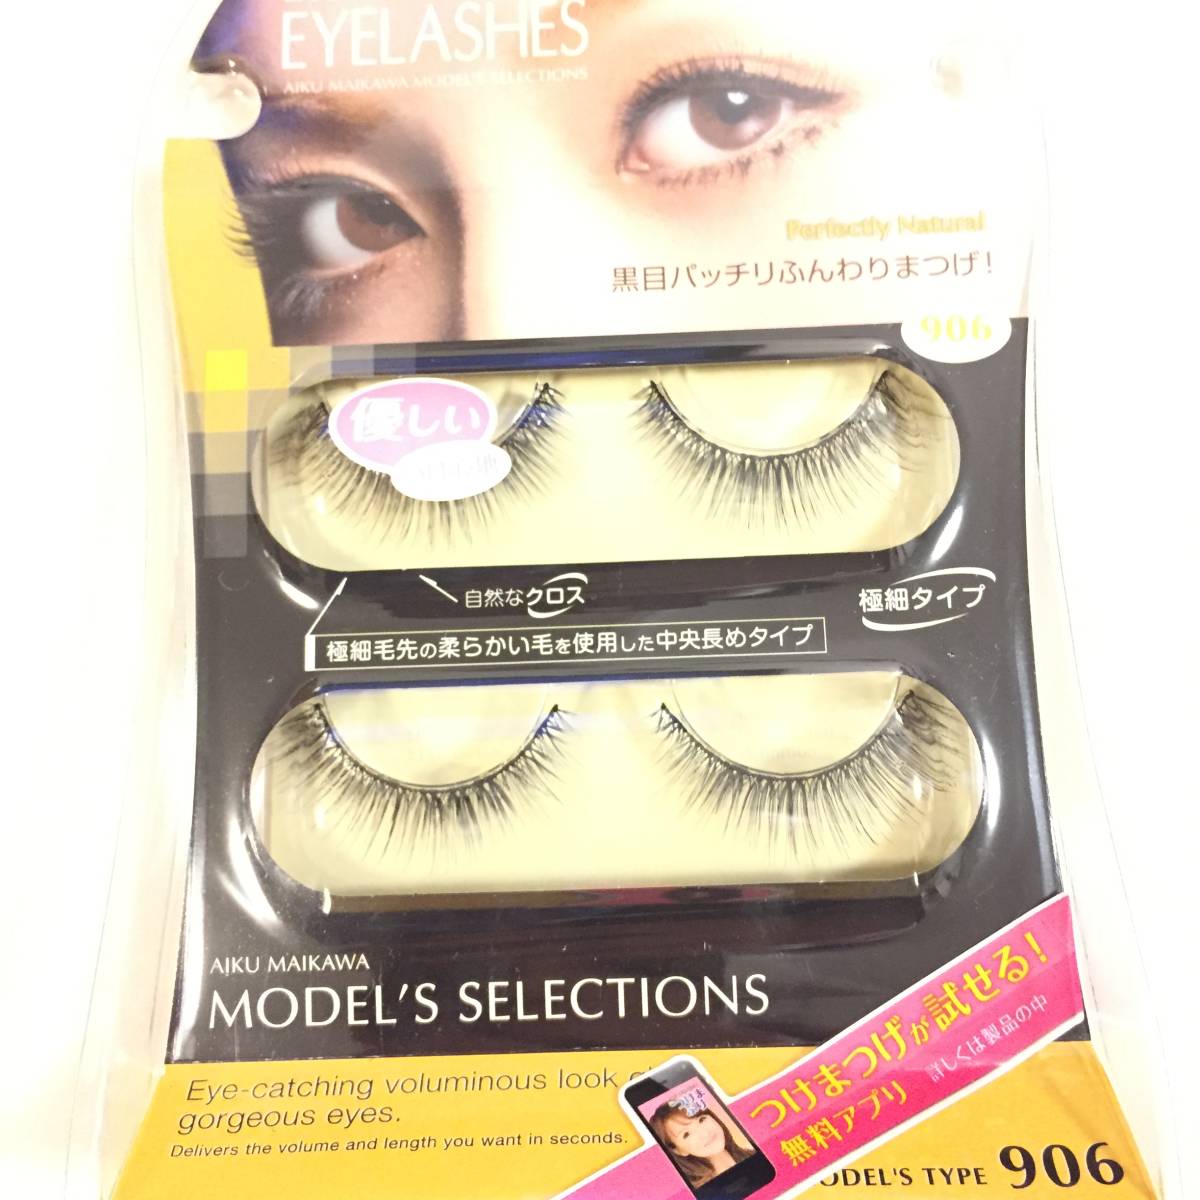  new goods *D.U.P EYELASHES eyelashes : Deux 906 Ricci eyes* eyelashes extensions Mai river ... selection ti- up 